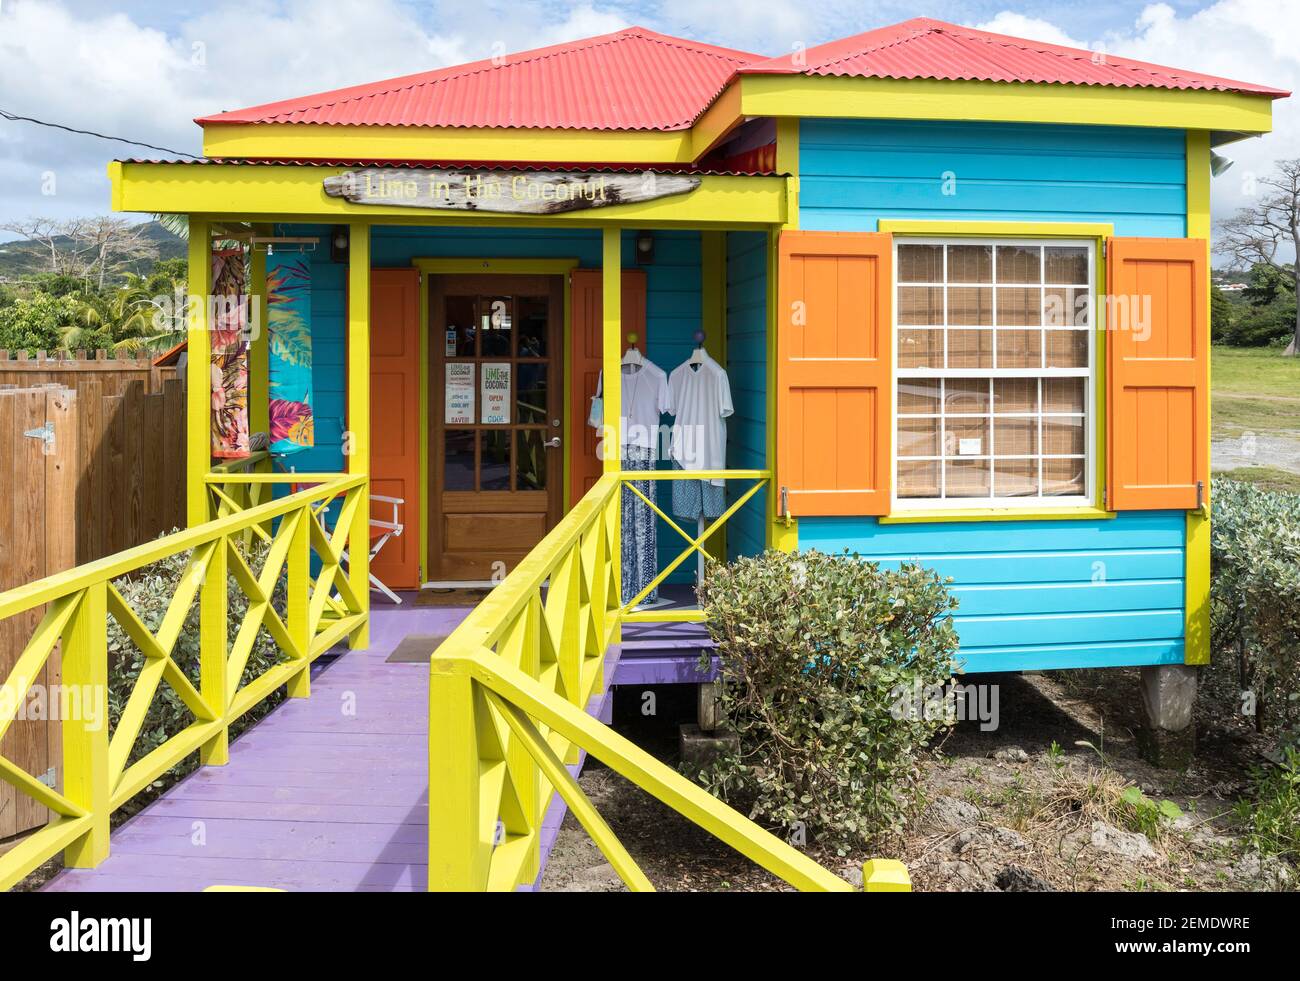 Bunt bemalte Holzhütte, die als Geschäft auf der Insel Nevis in der Karibik in hellem Sonnenlicht geöffnet wurde, keine Menschen Stockfoto